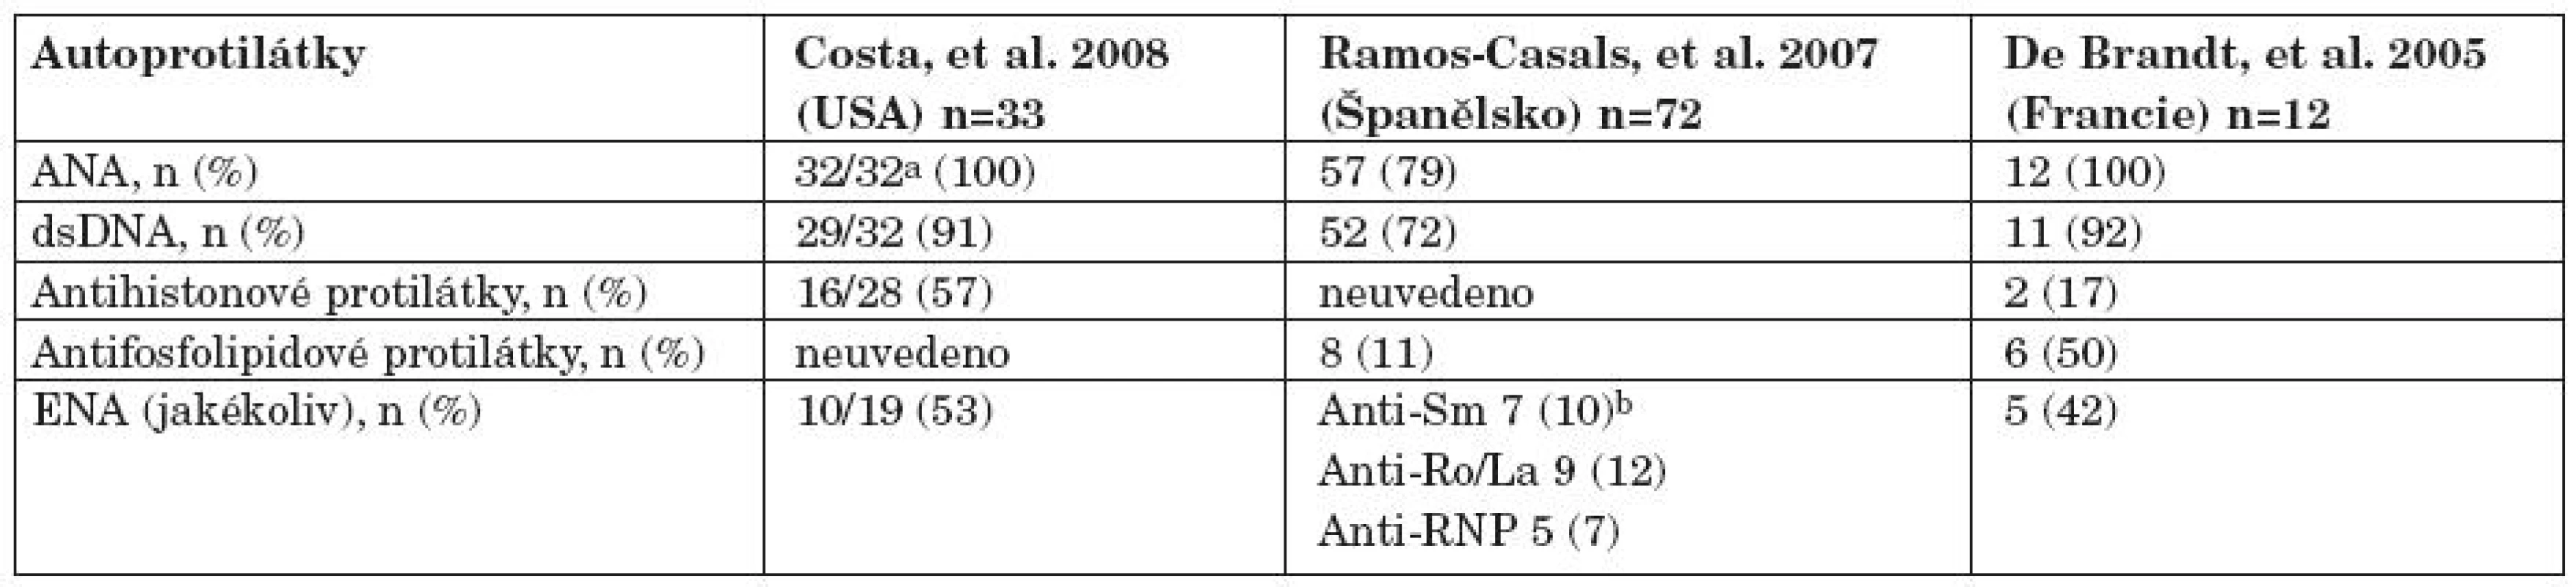 Autoprotilátkový profil u pacientů s hlášením léky indukovaným lupusem po anti TNF terapii podle Williamse a spol. (19).